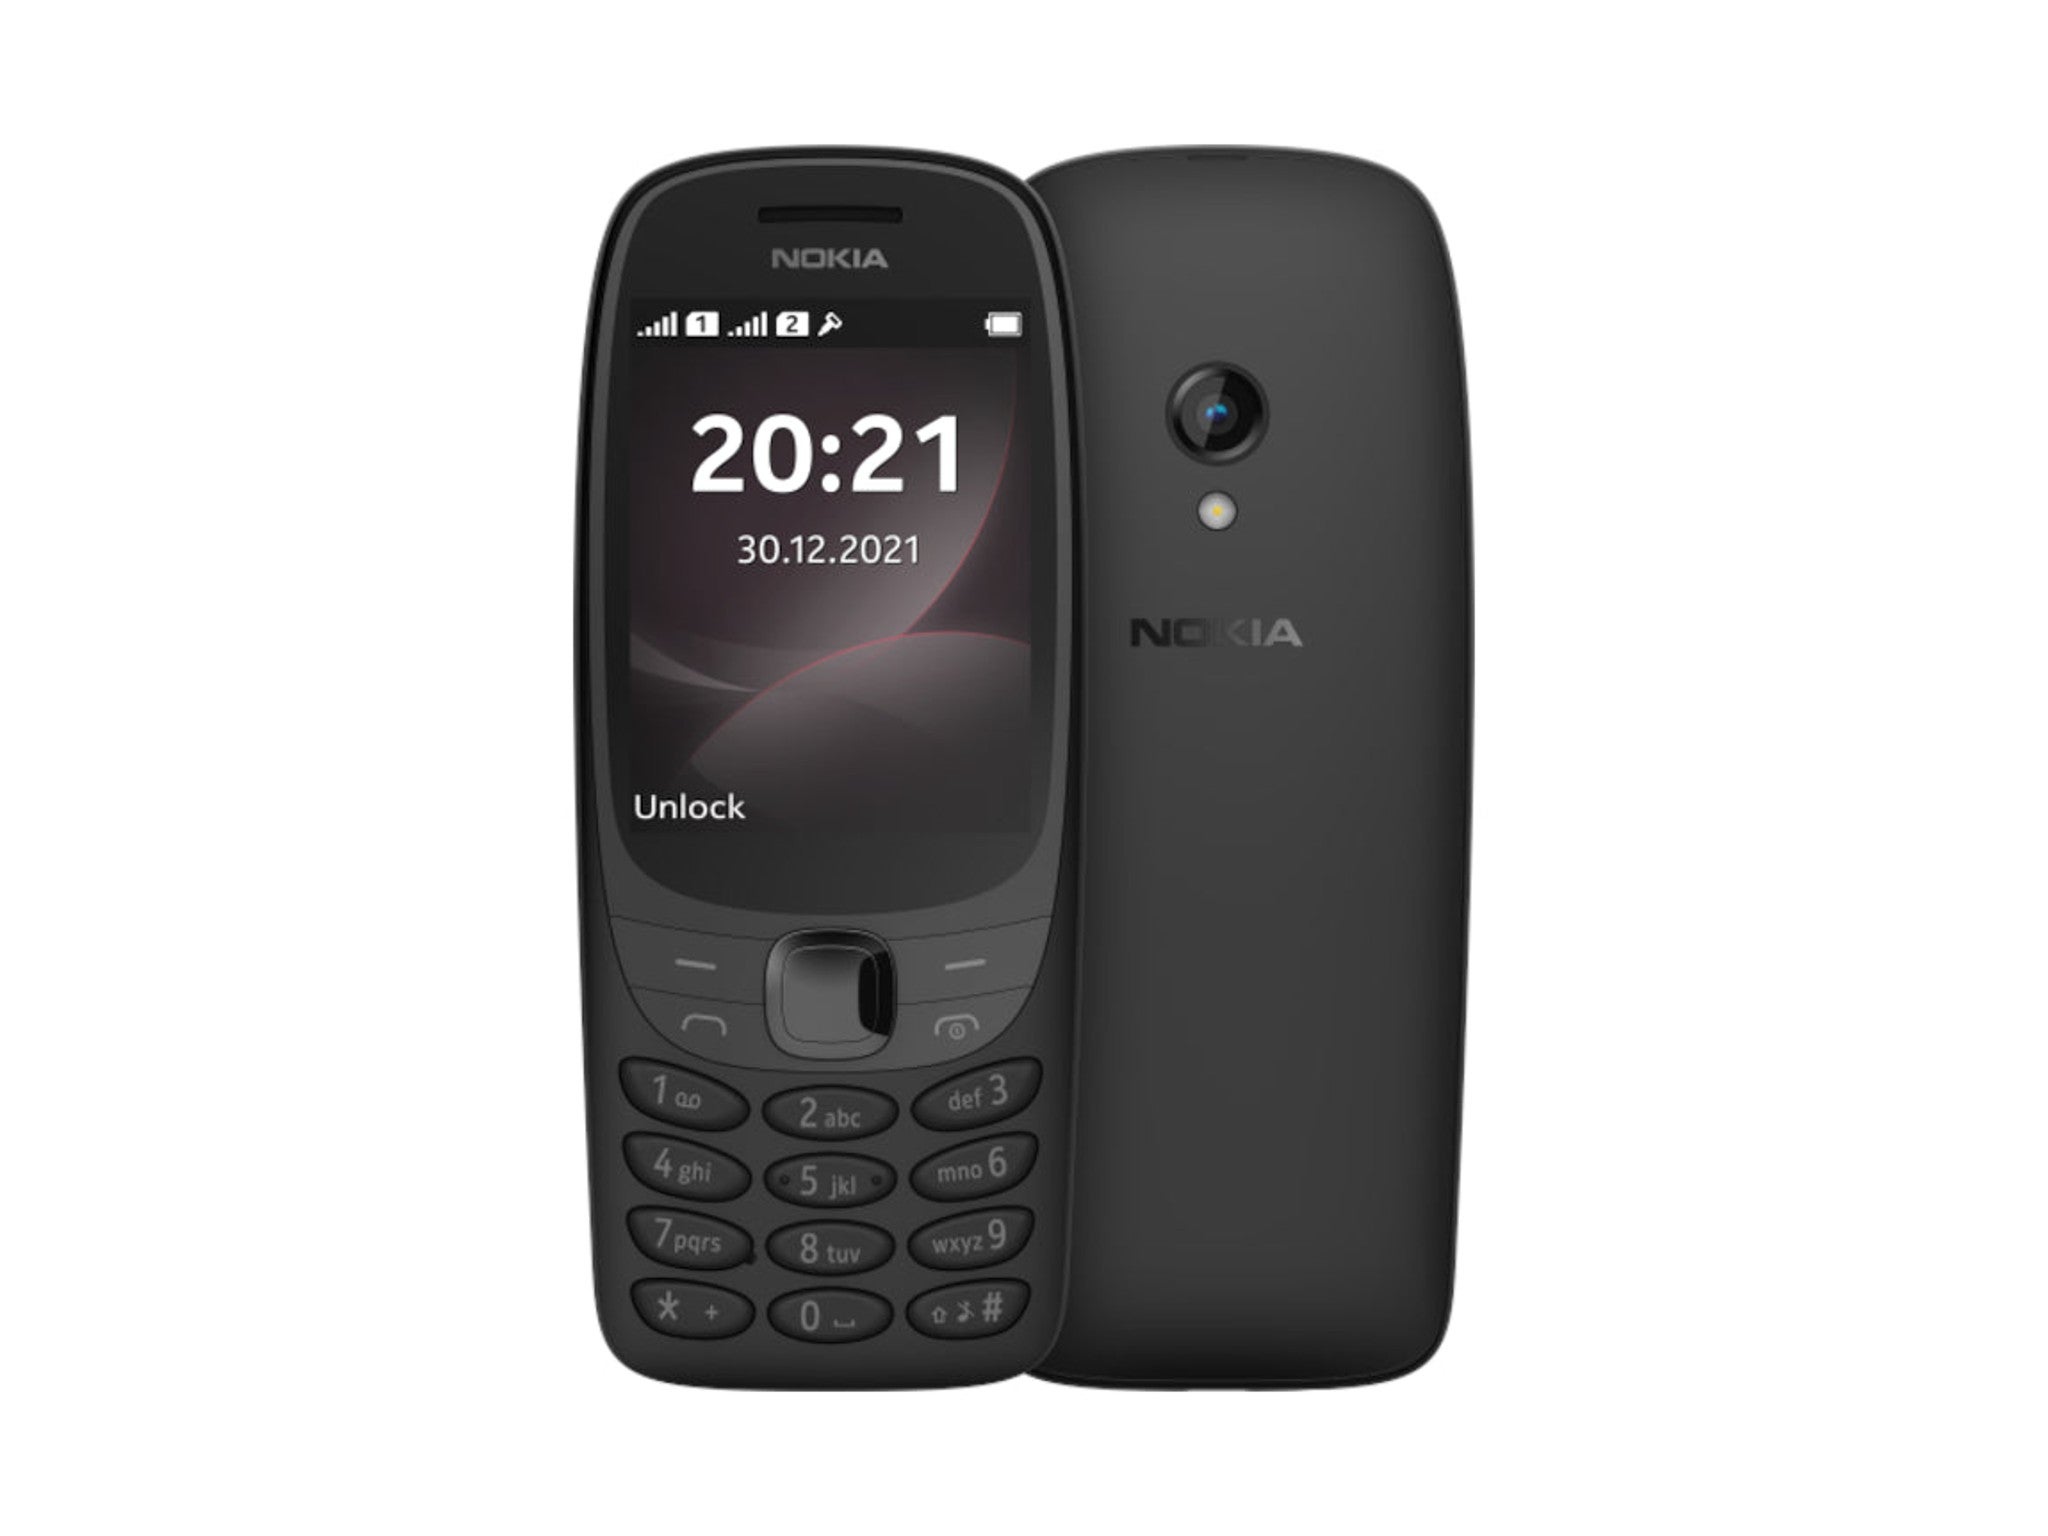 Nokia 6310 indybest